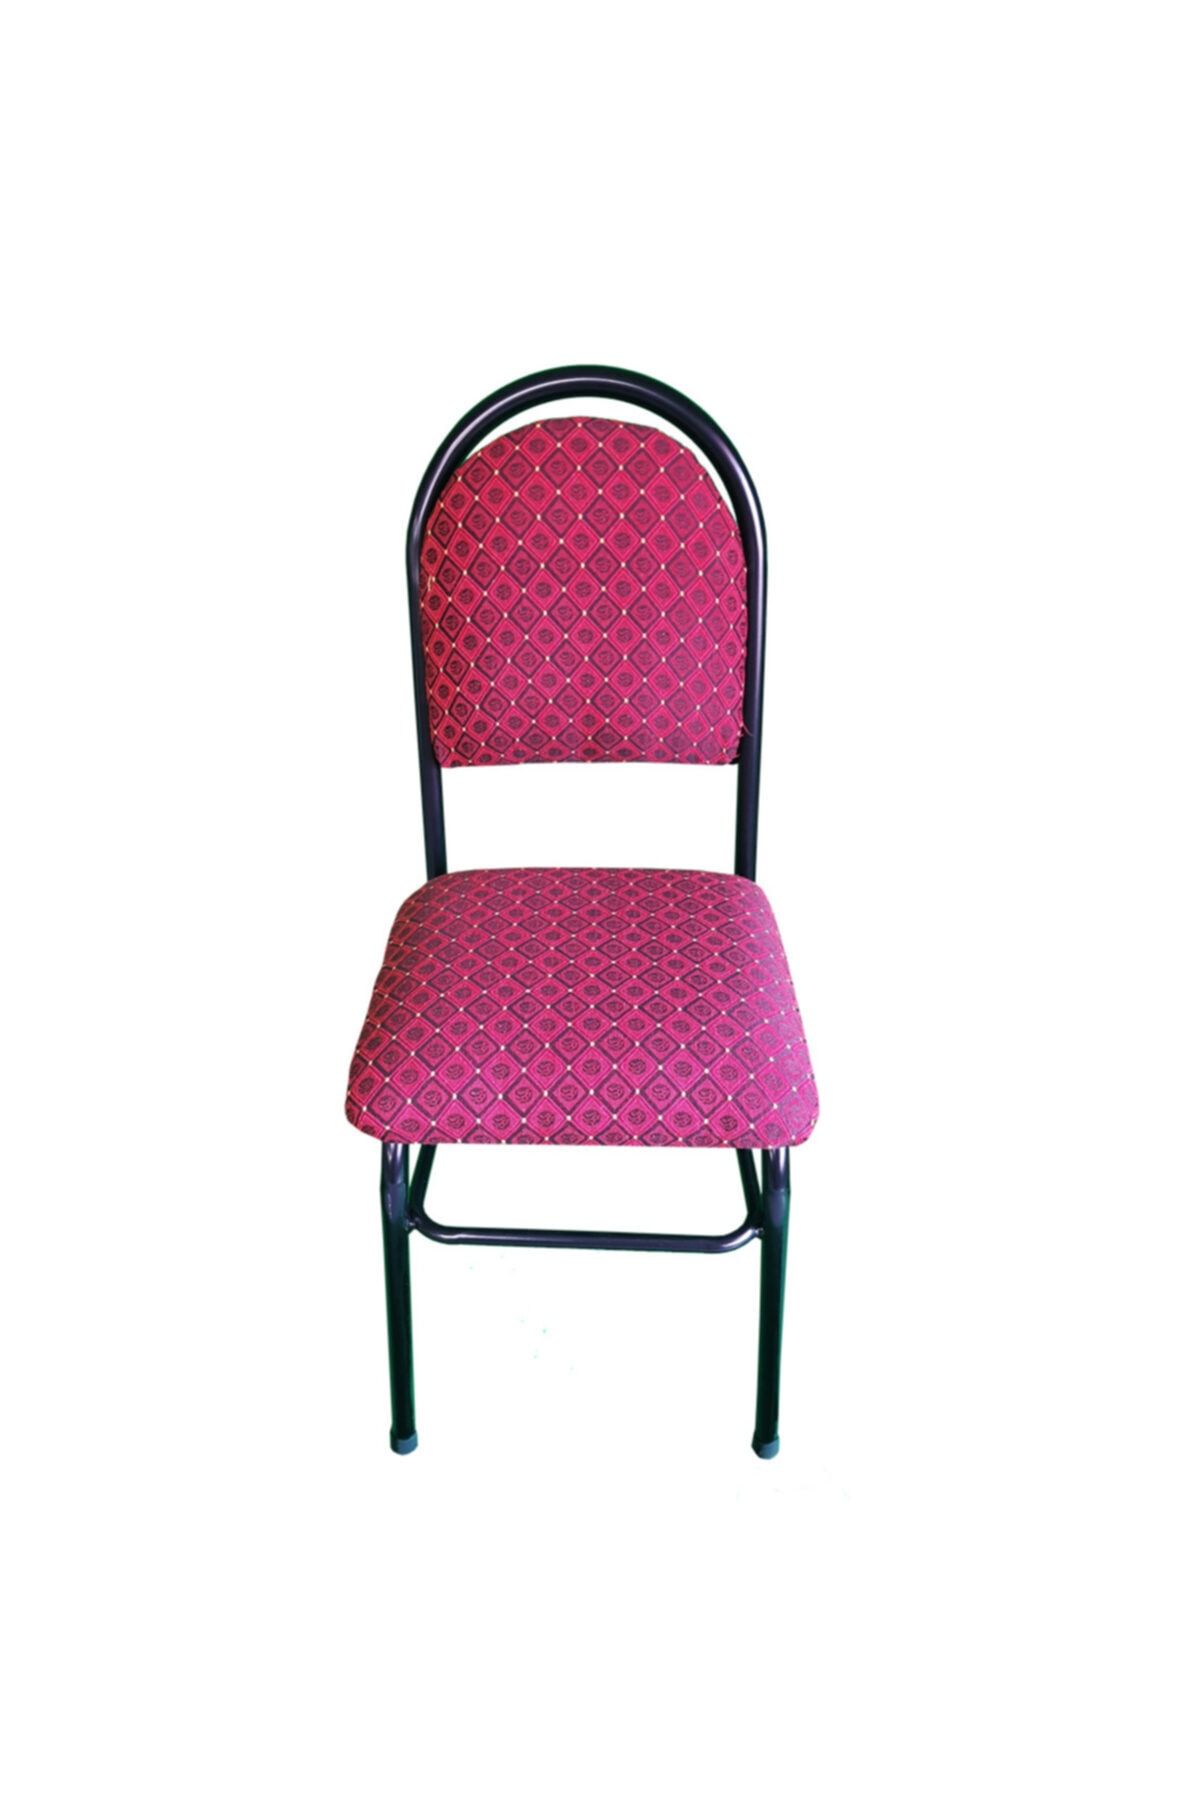 Lort Sandalye Kırmızı Desenli Minder_1